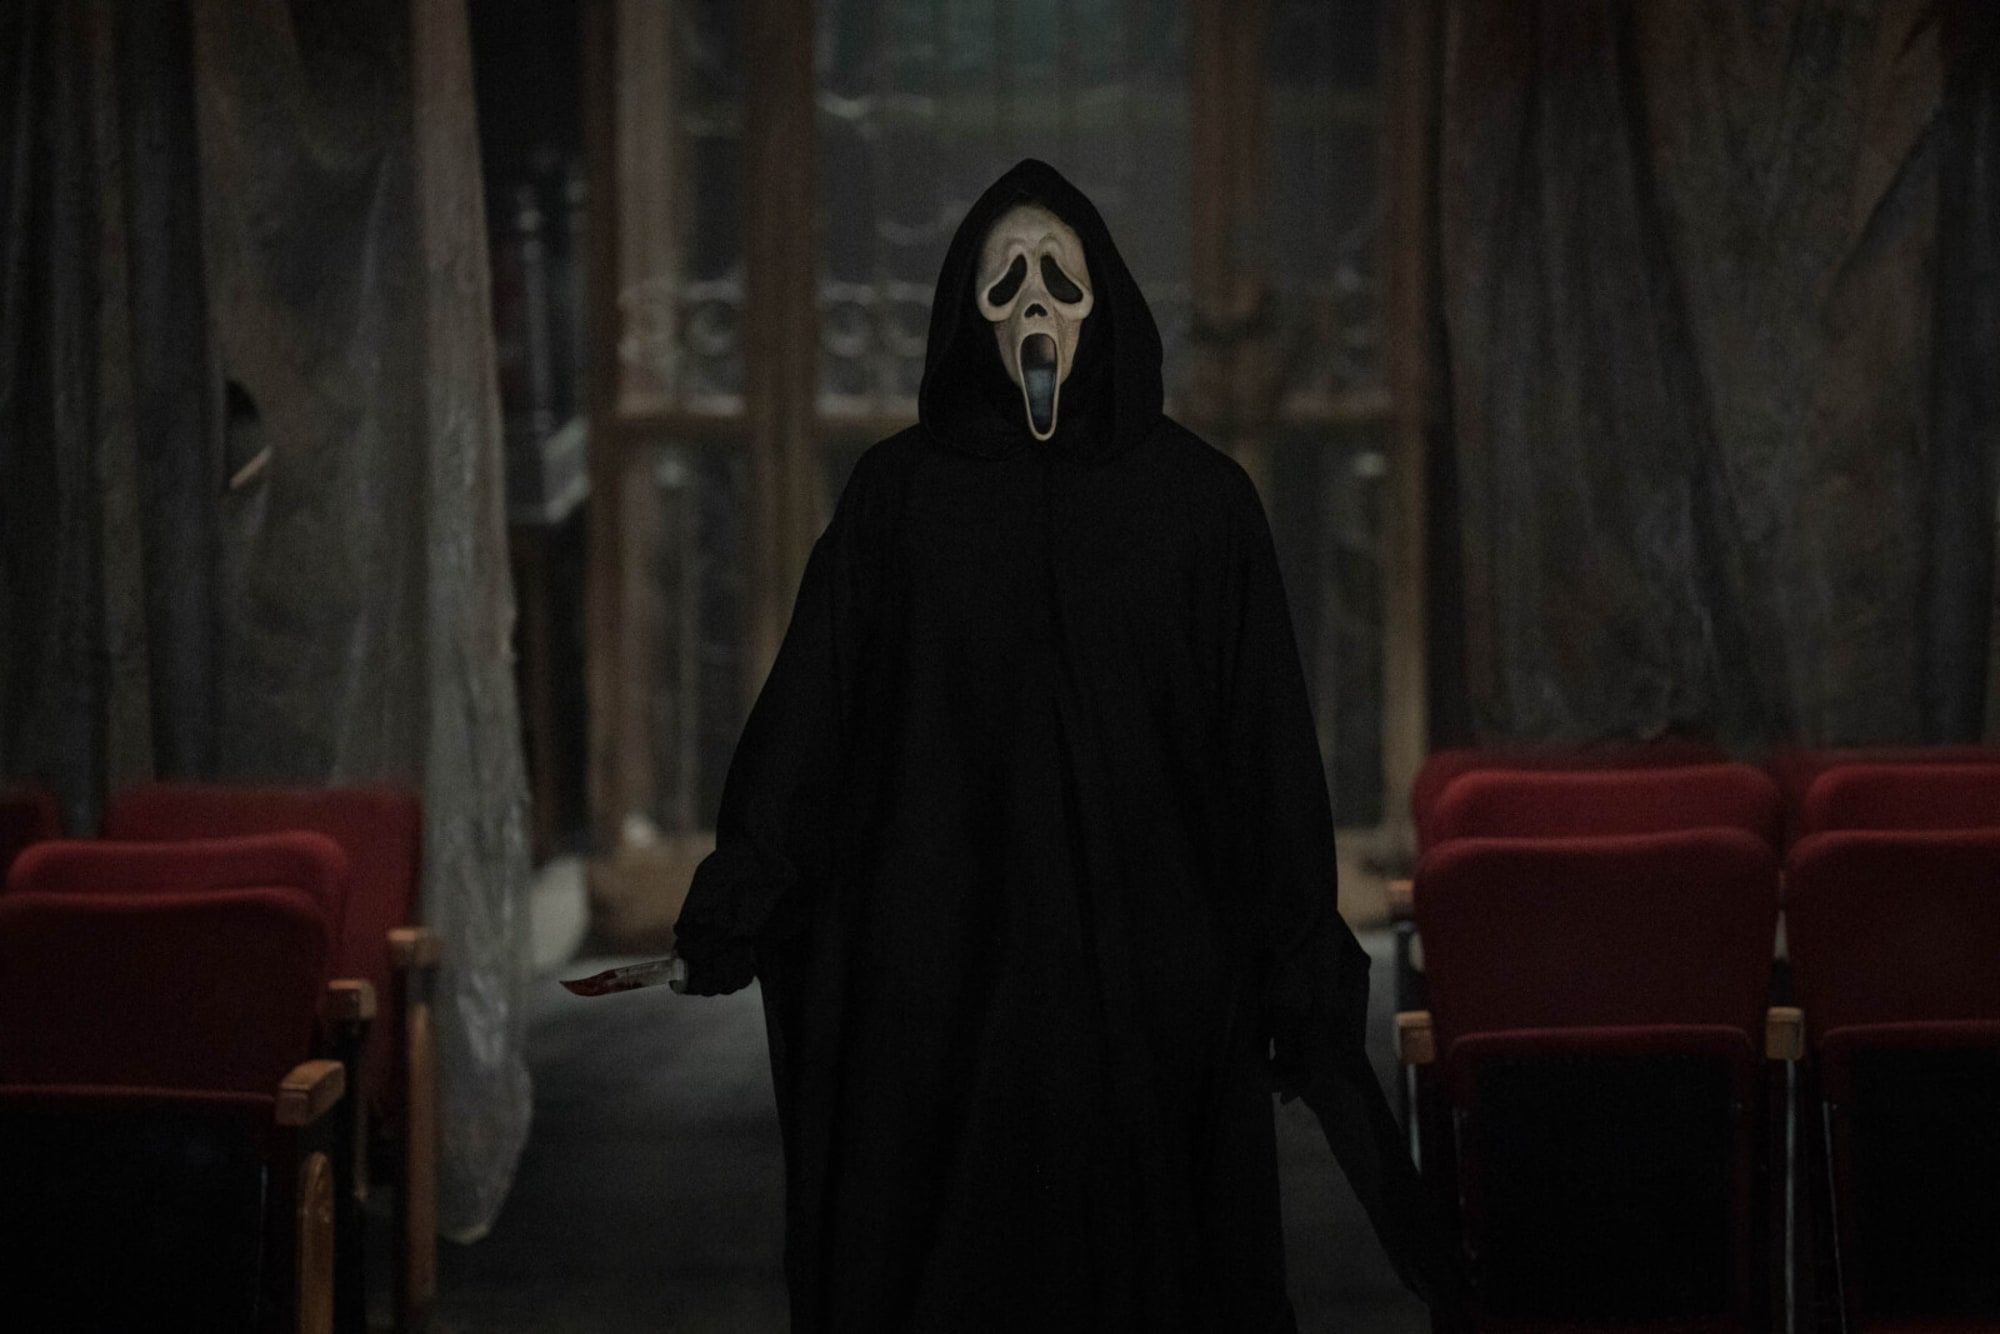 Scream VI Teaser Trailer (2023) 